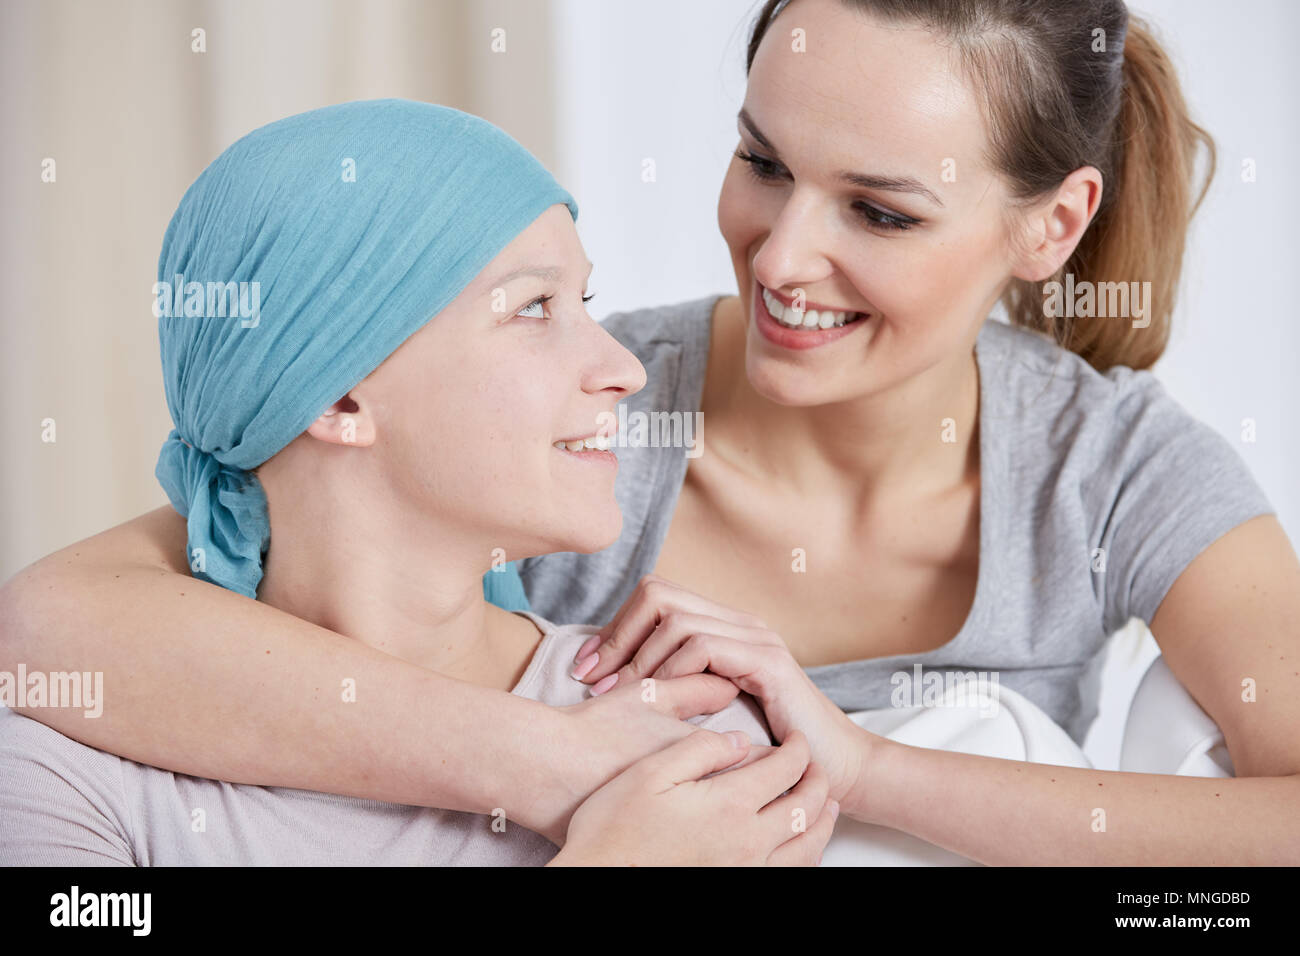 Cancer espoir femme portant foulard, parler avec tes amis Banque D'Images